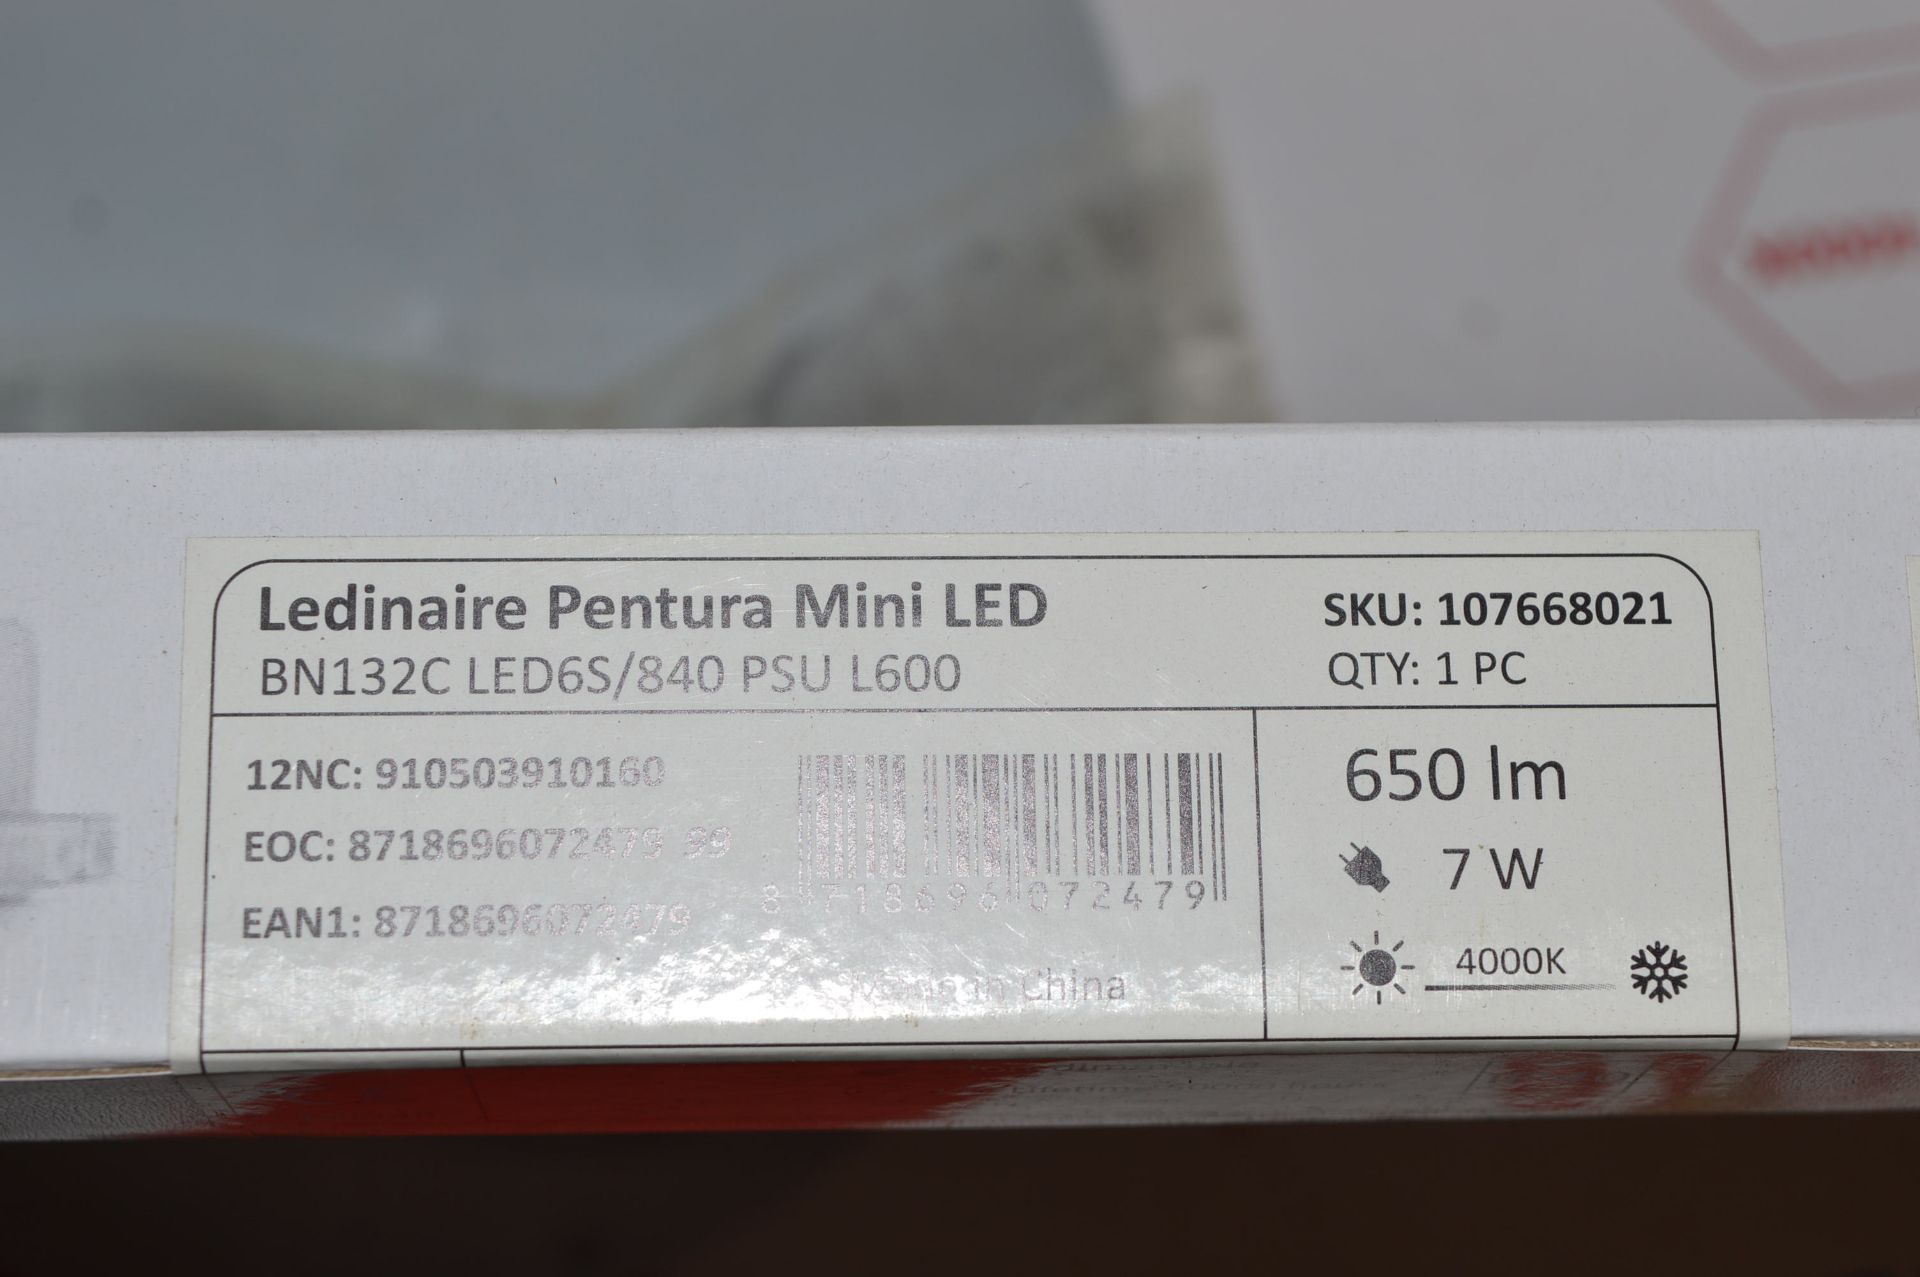 ~23 Ledinaire Pentura Mini LED Strip Lights - Image 2 of 2